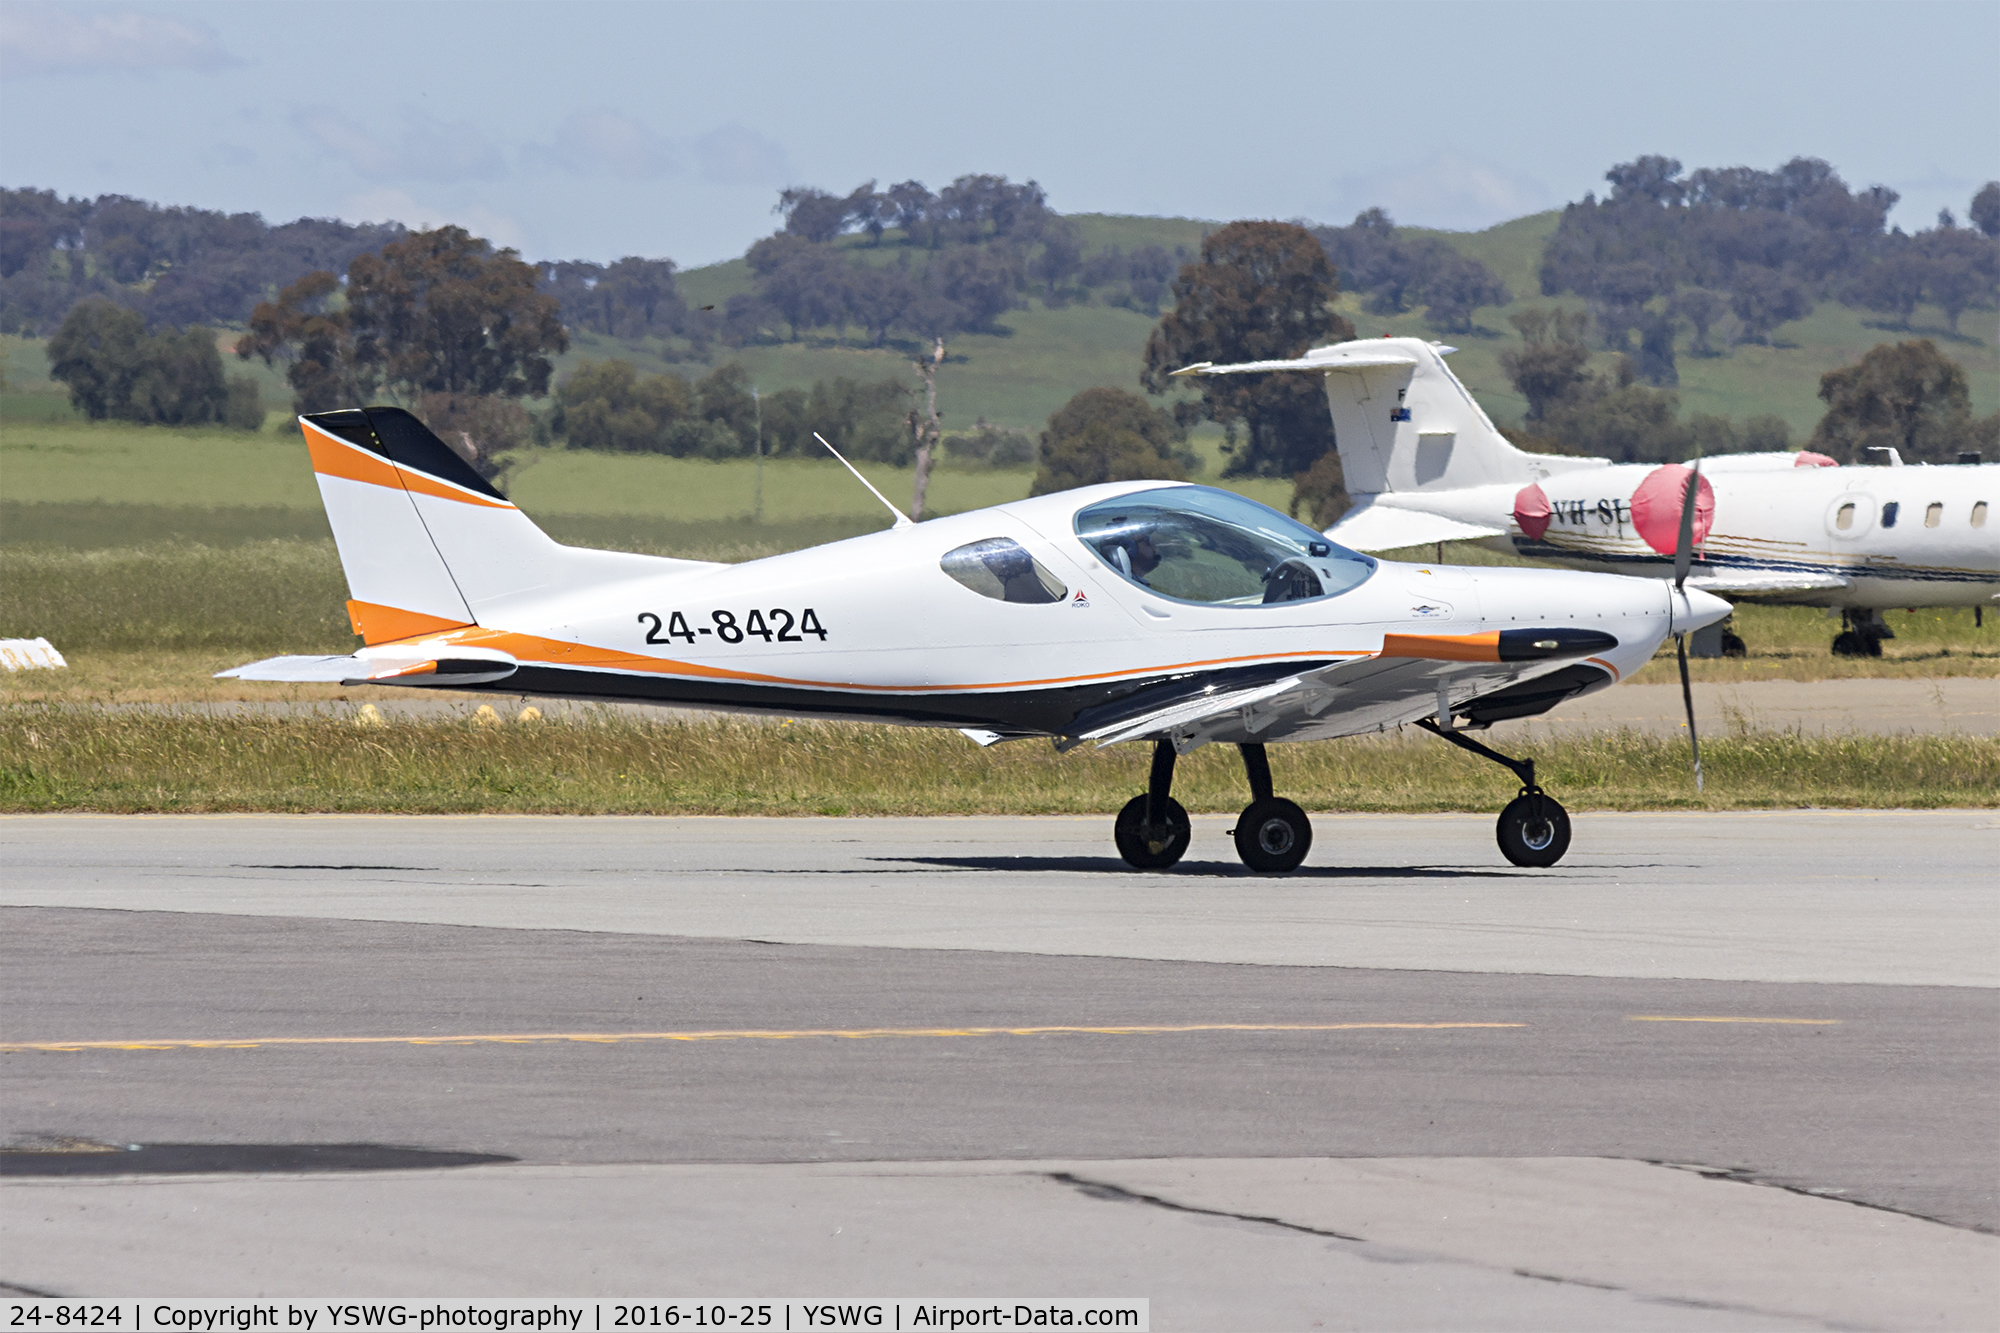 24-8424, 2013 Roko Aero NG4 C/N VIA0503/2013, Roko Aero NG4 (24-8424) taxiing at Wagga Wagga Airport